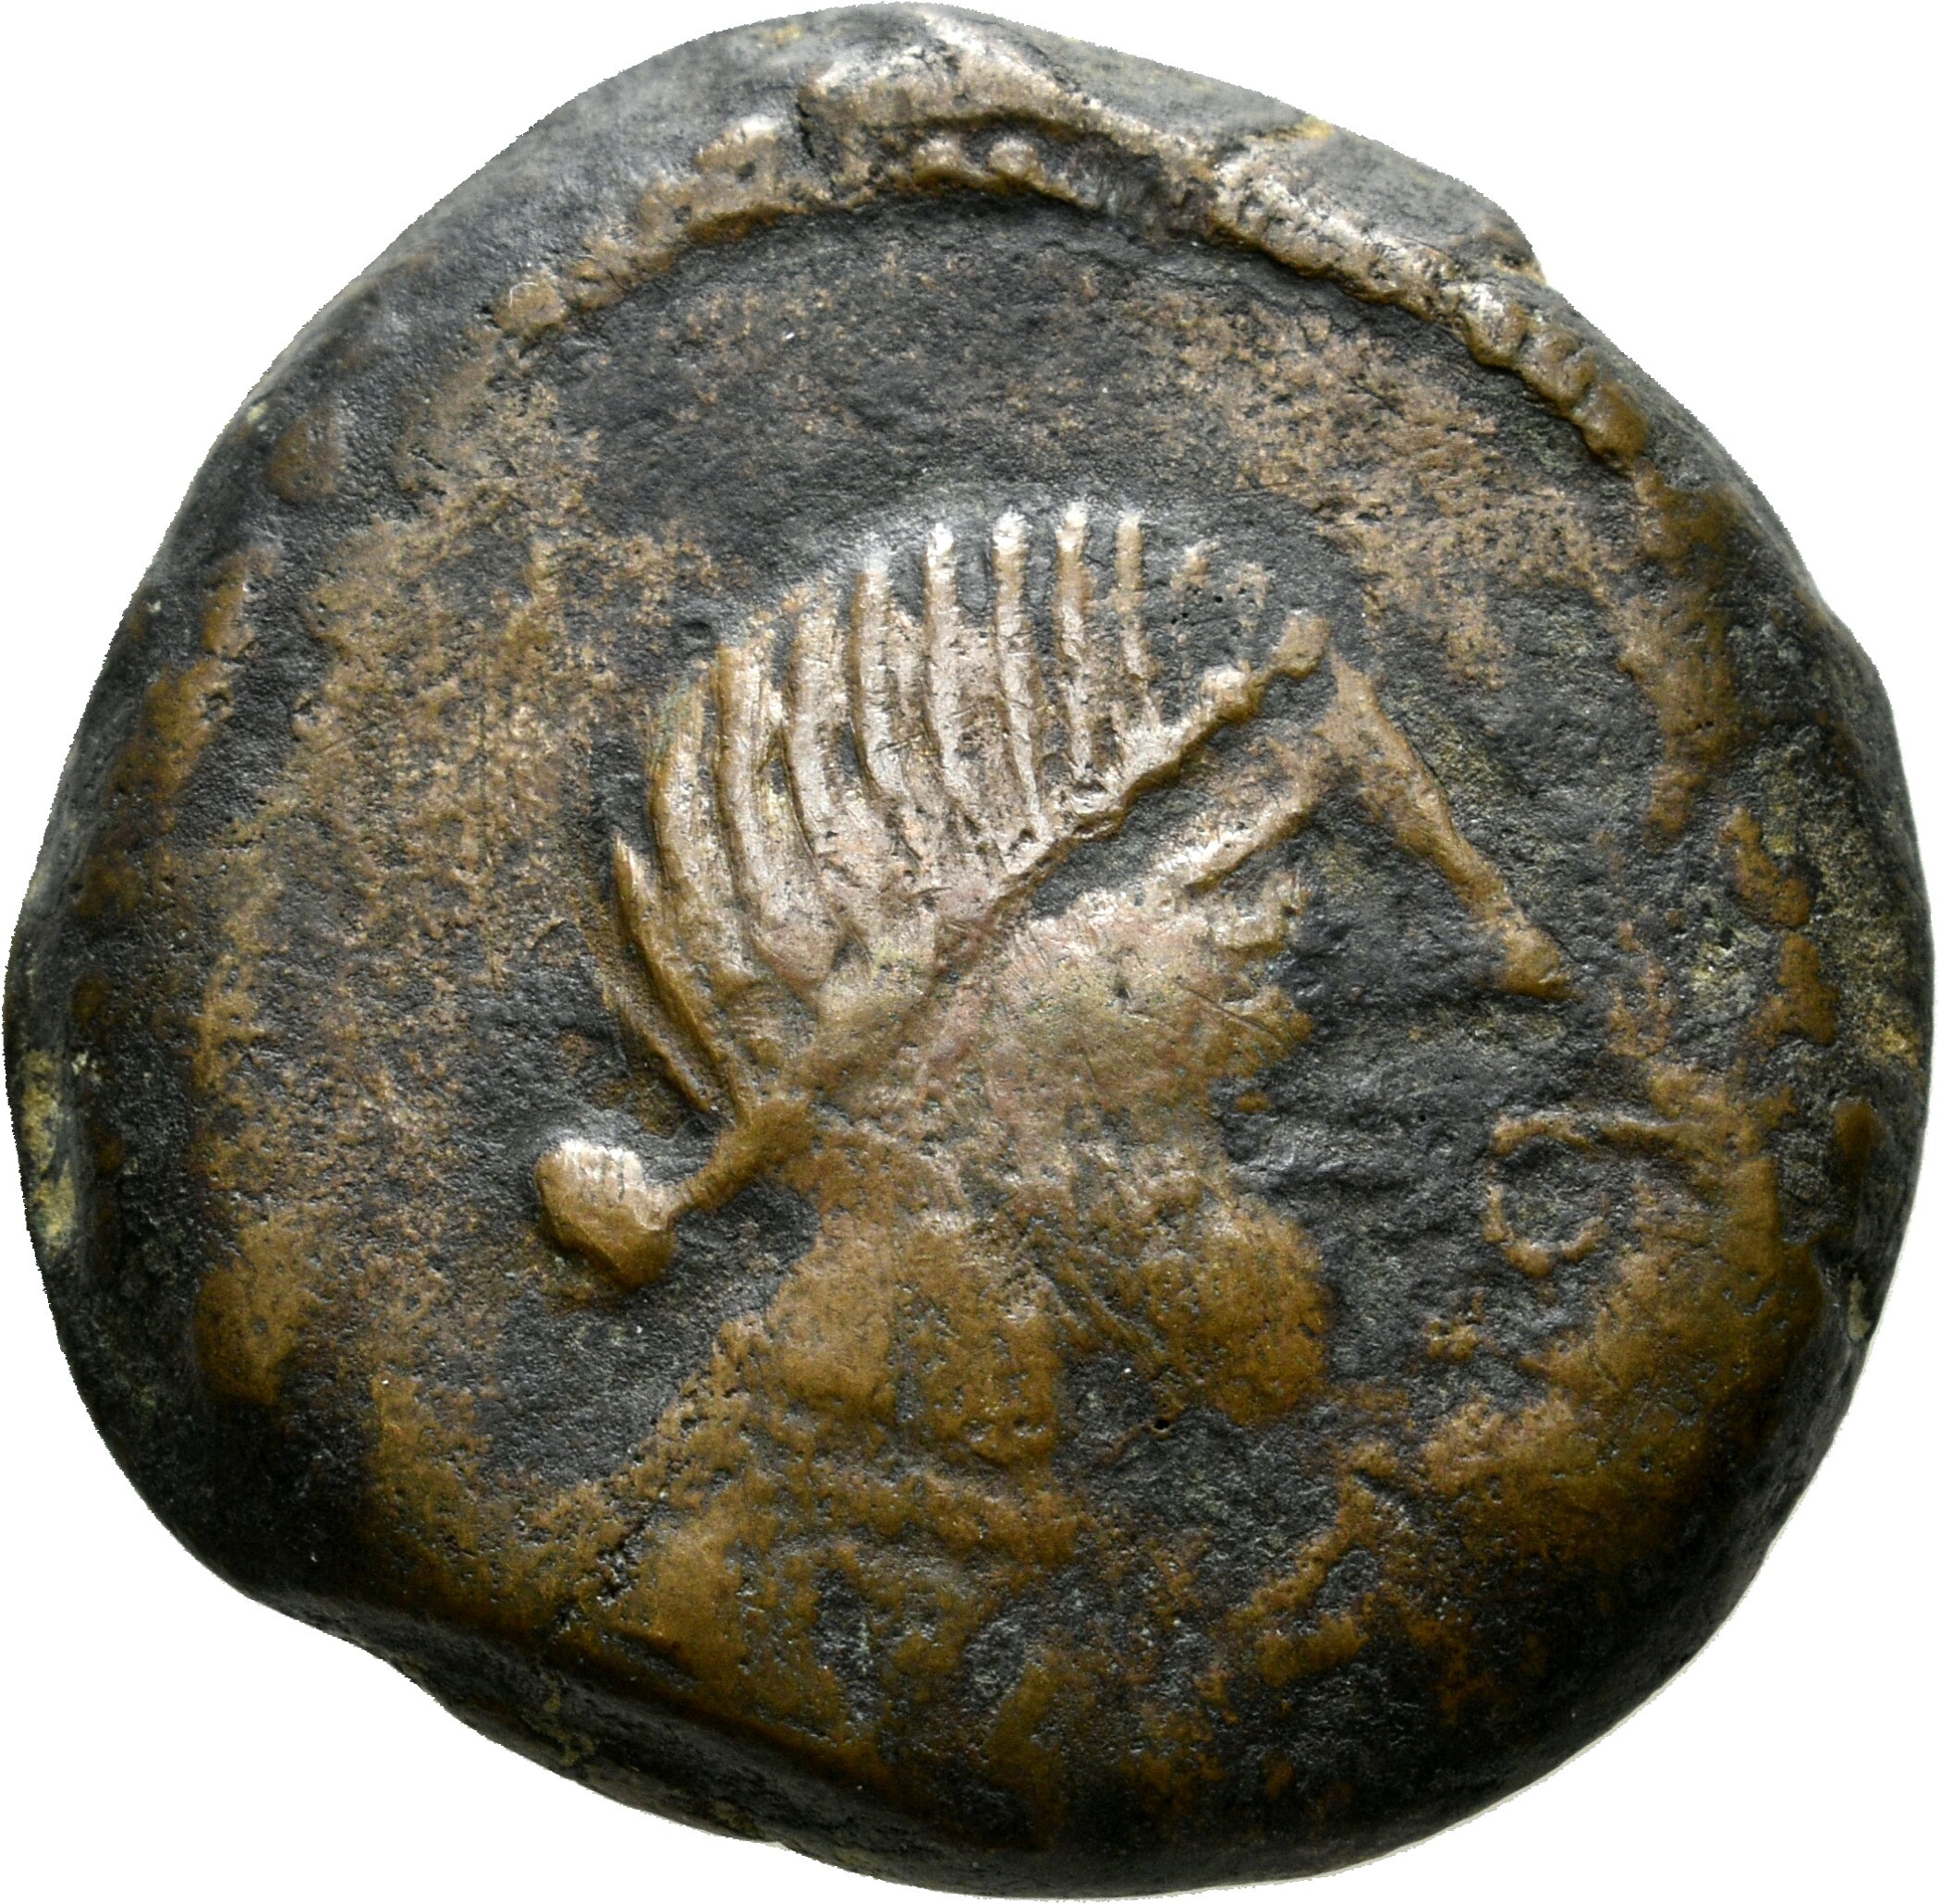 Bronzemünze des keltischen Stammes Turduli mit römischer und keltiberischer Schrift (Sparkassenverband Baden-Württemberg CC BY-NC-SA)